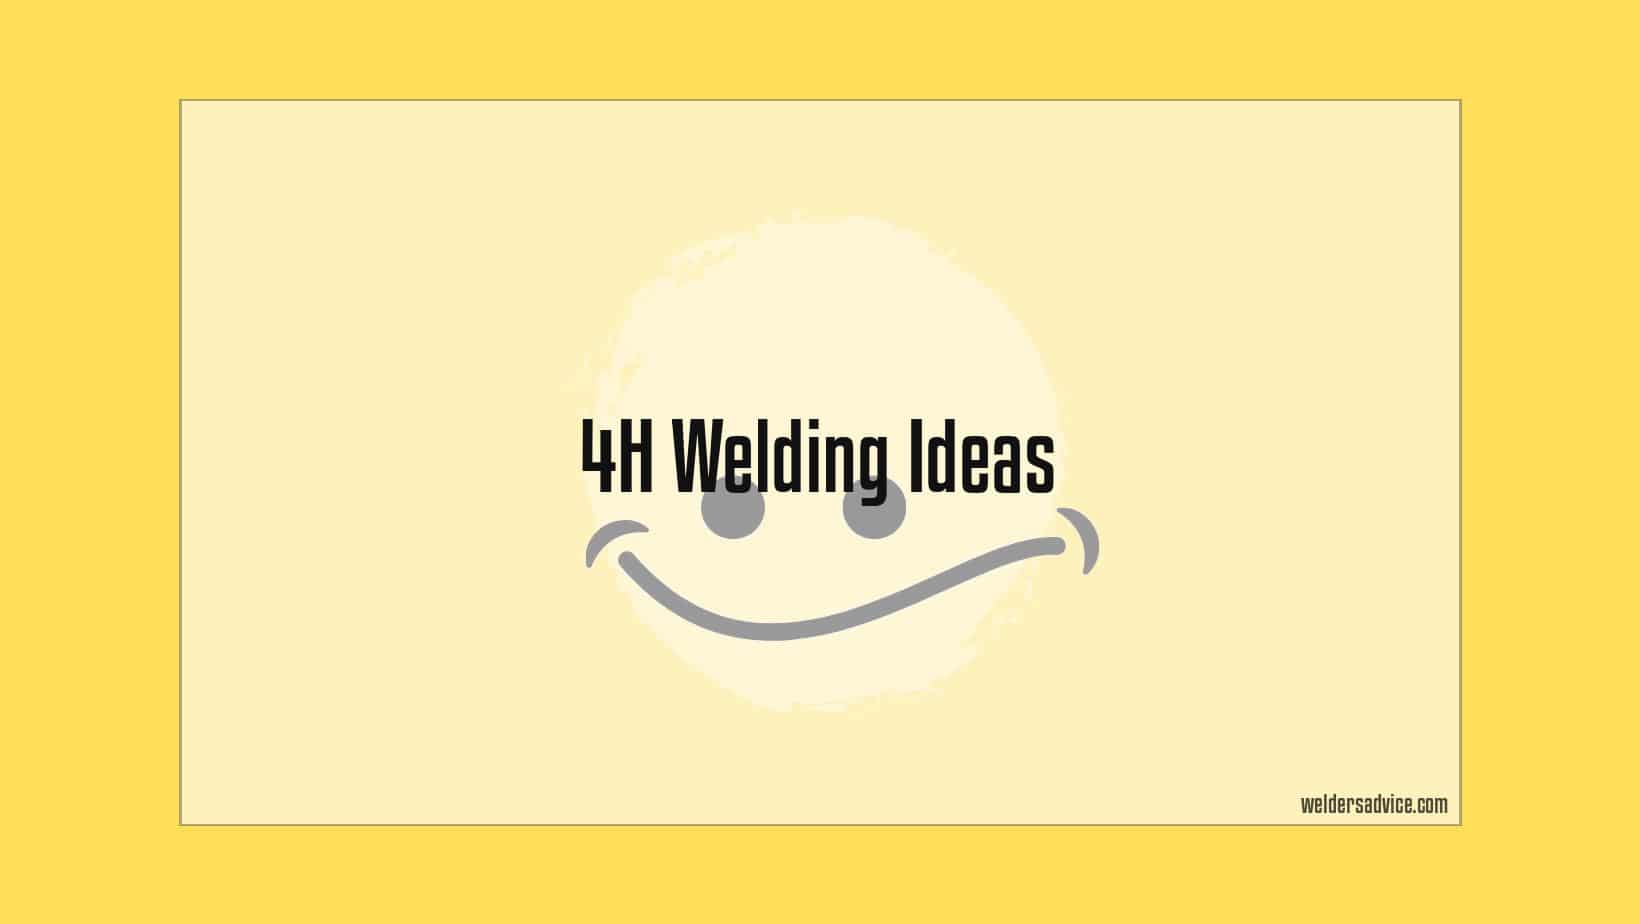 4h welding ideas